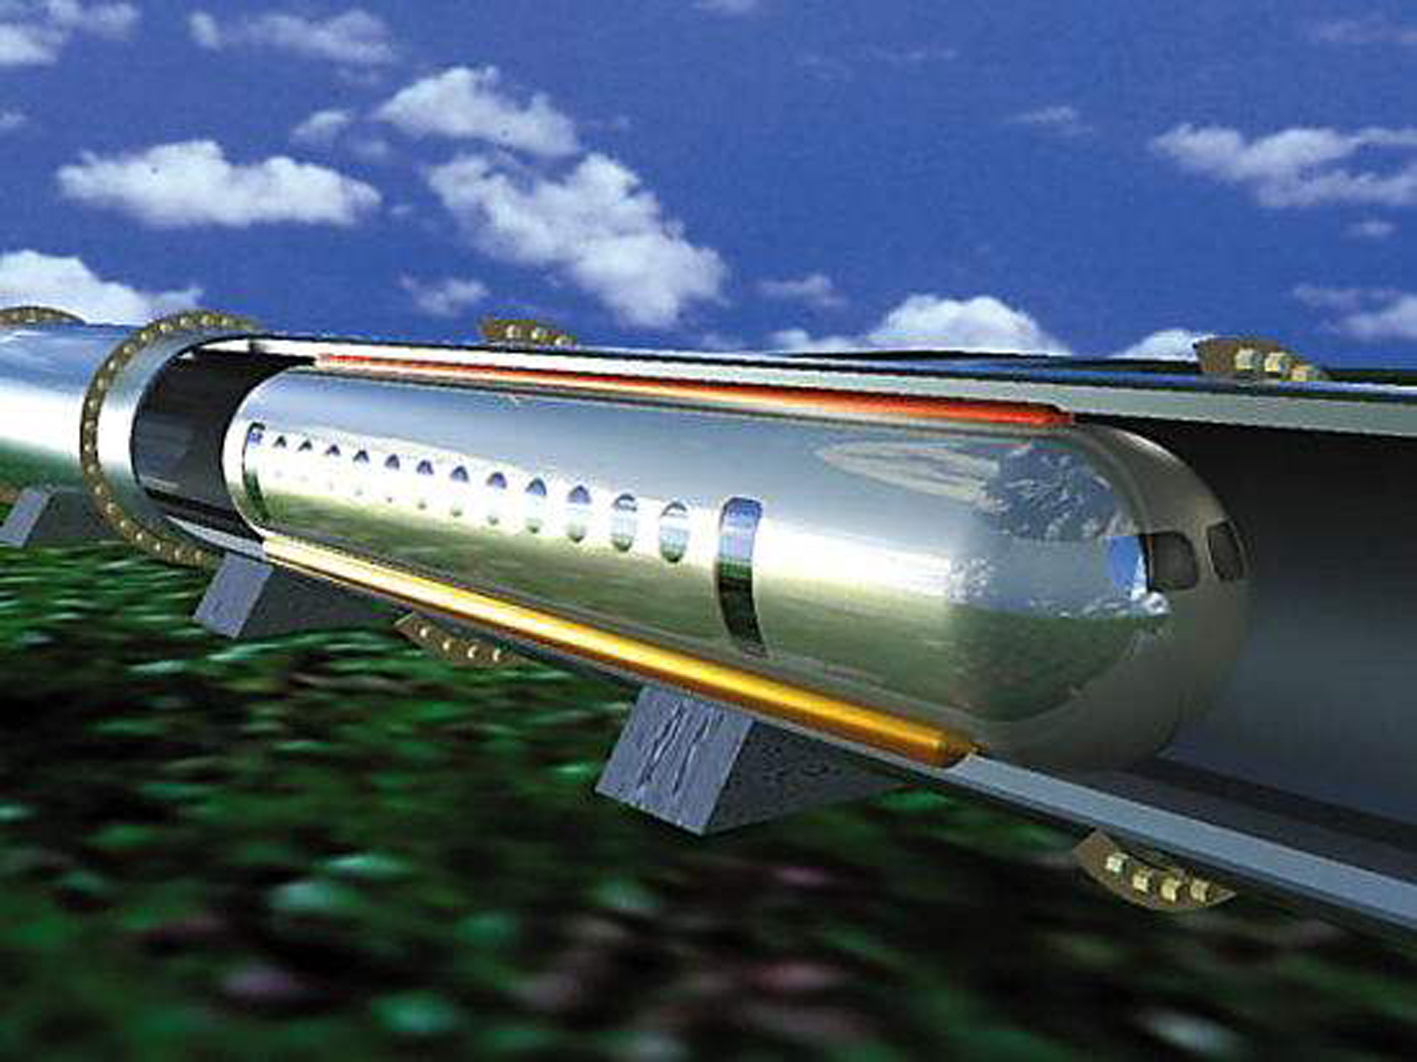 日本推出新型磁悬浮列车 时速500公里内部宽敞舒适